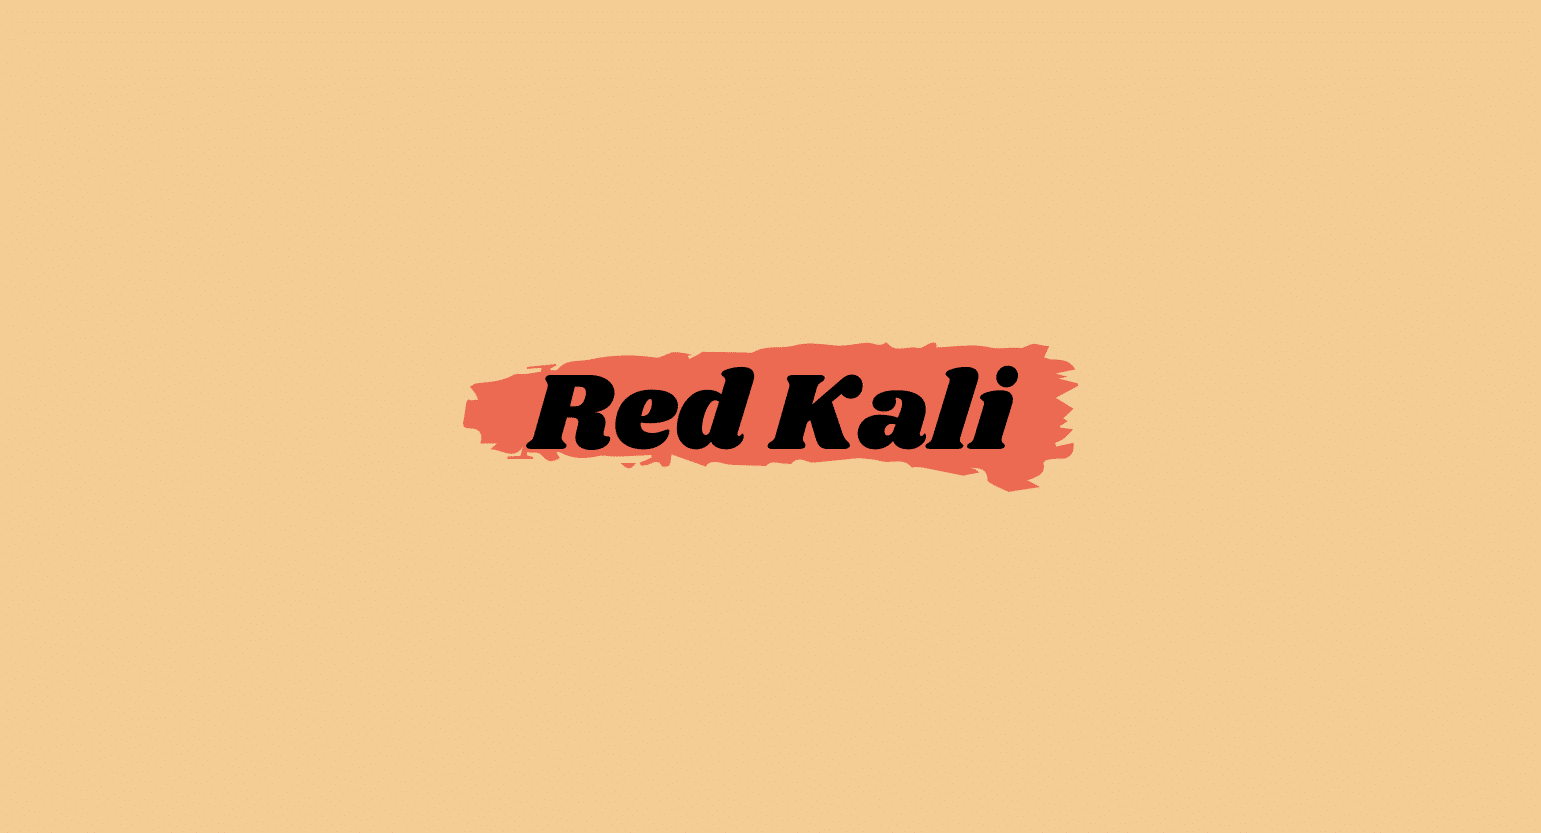 Red Kali Kratom: Benefits, Dosage, & Safety